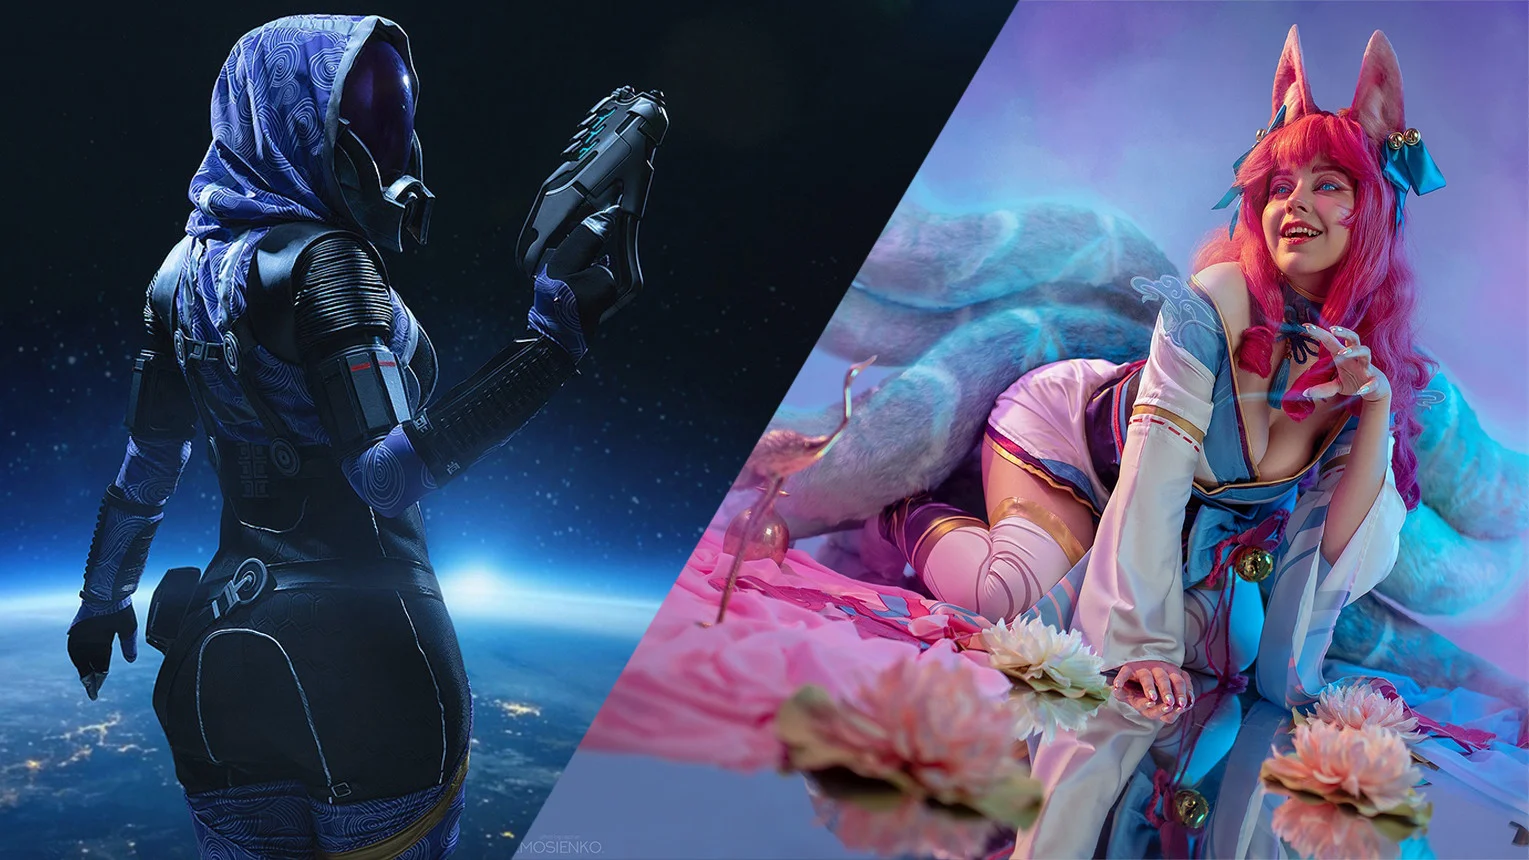 Косплей недели: Mass Effect, League of Legends, Genshin Impact, Mortal Kombat - изображение обложка